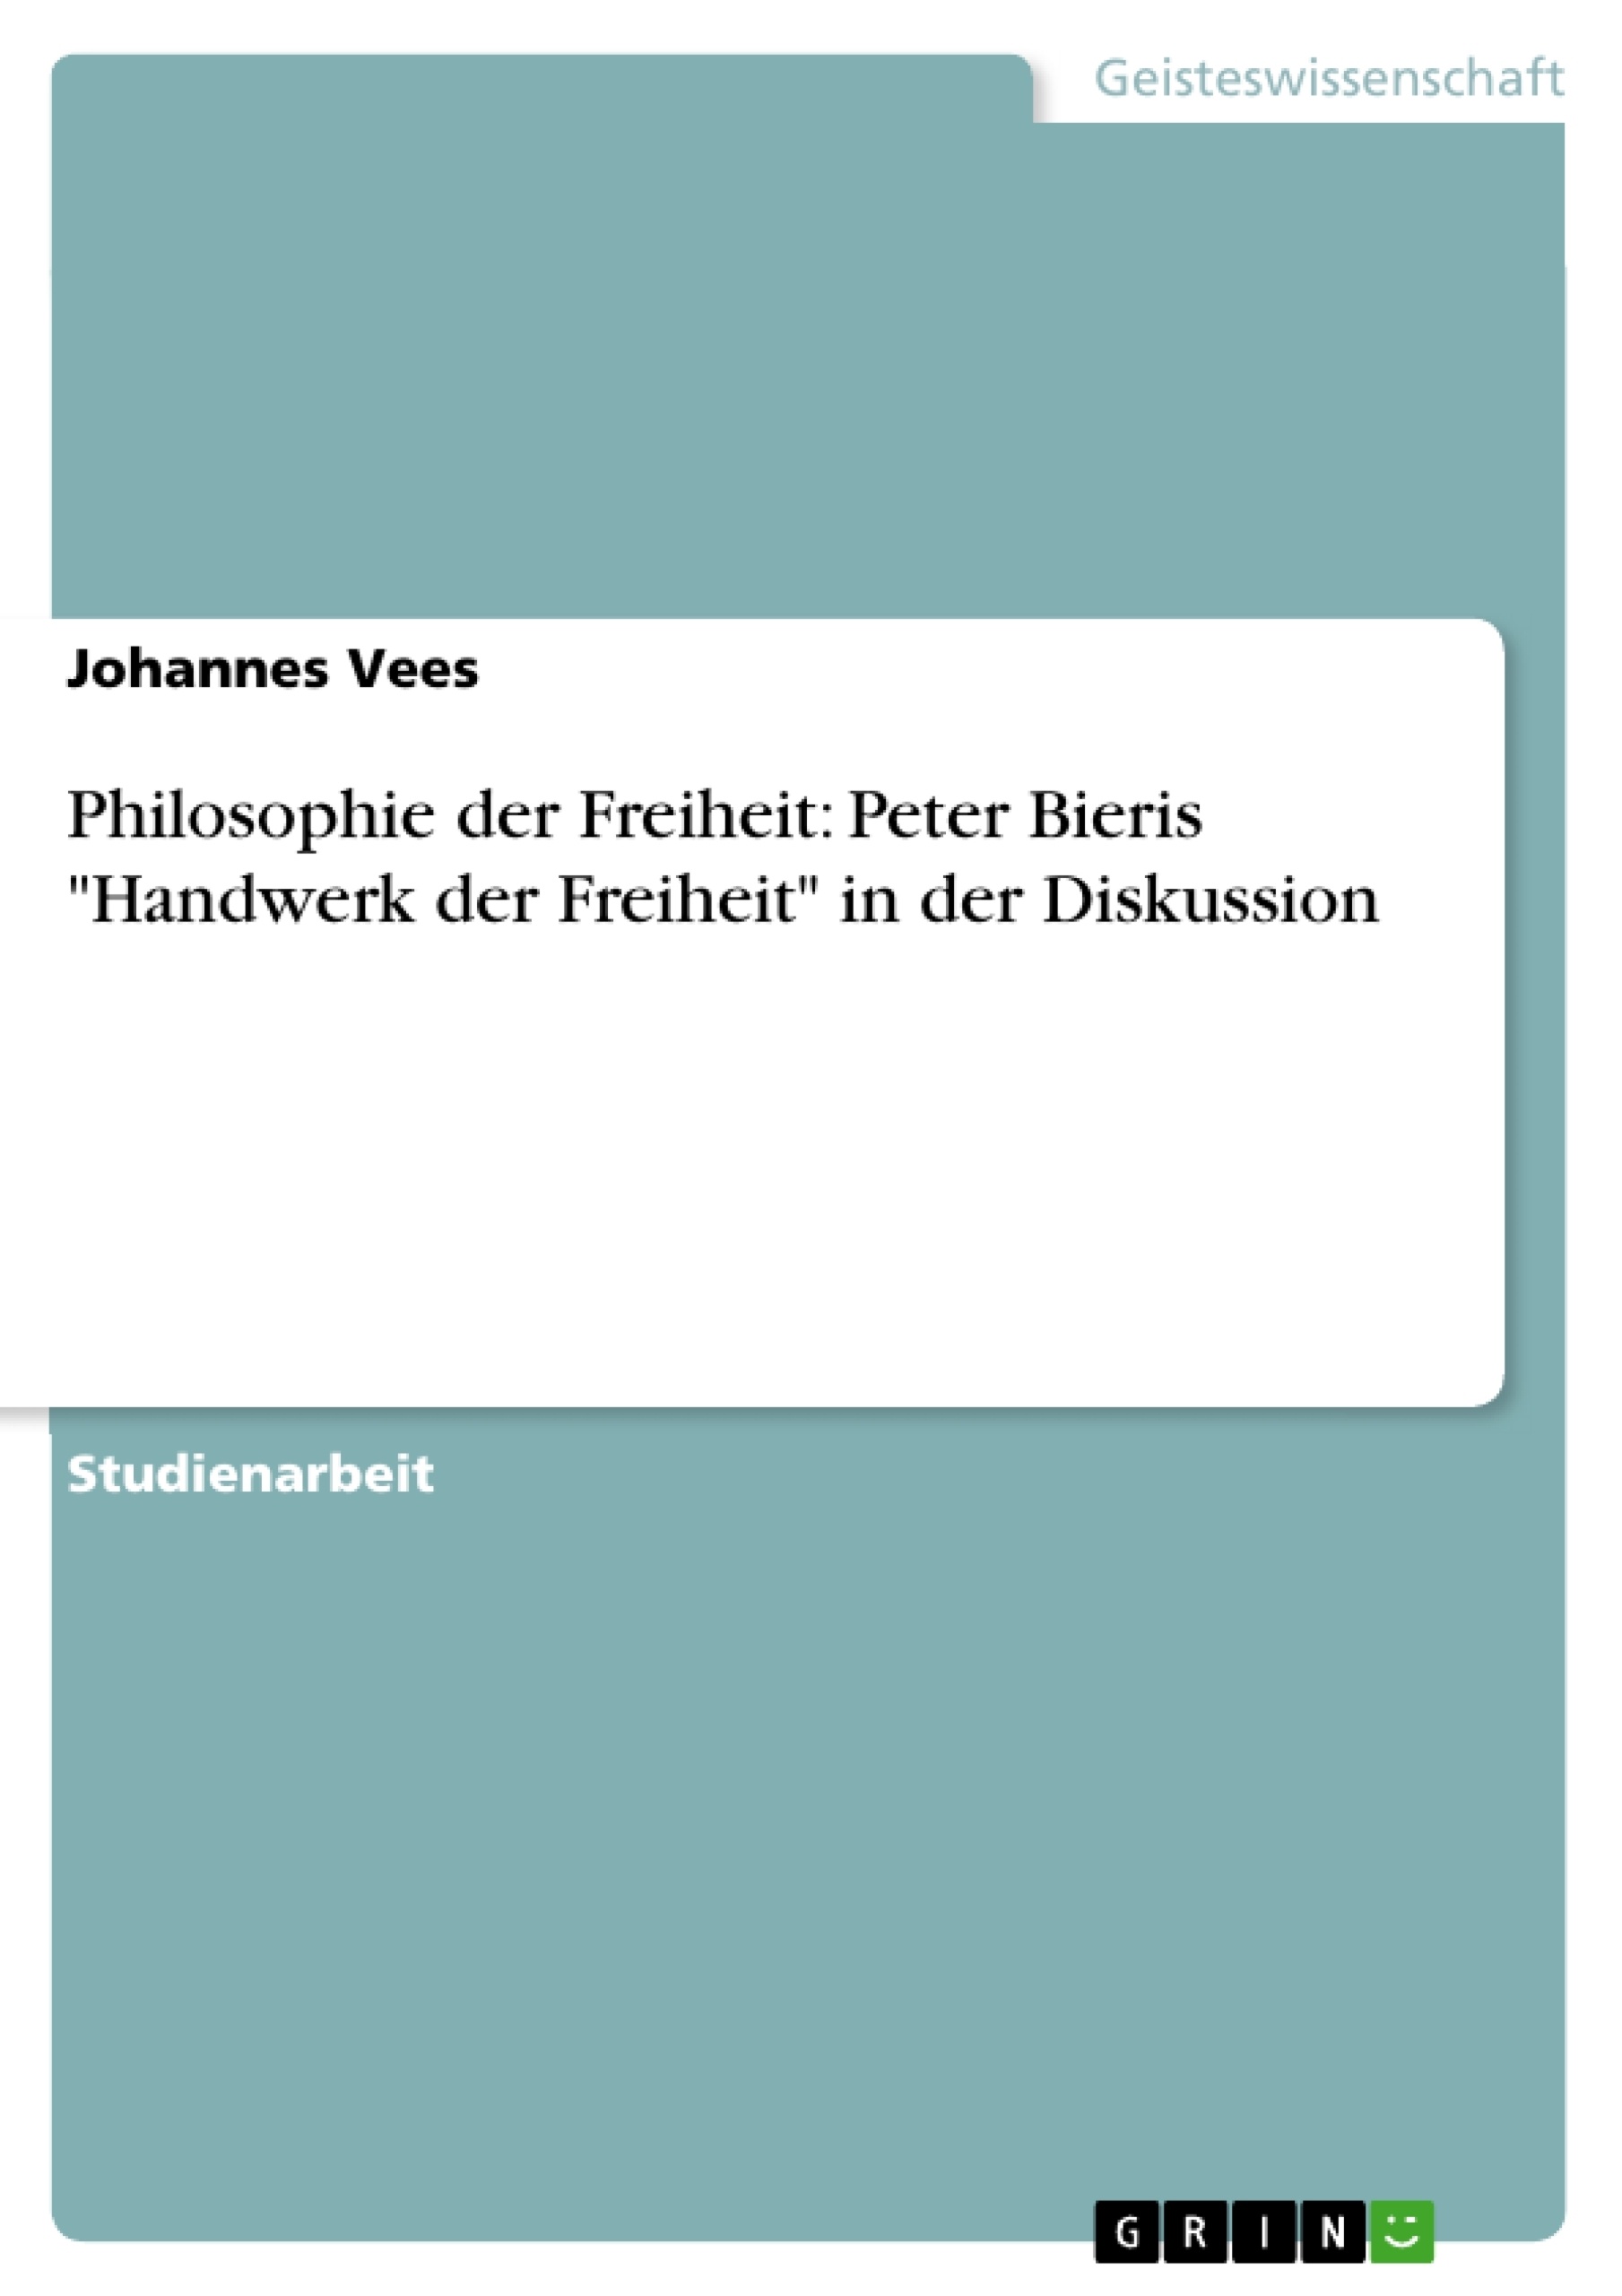 Título: Philosophie der Freiheit: Peter Bieris "Handwerk der Freiheit" in der Diskussion